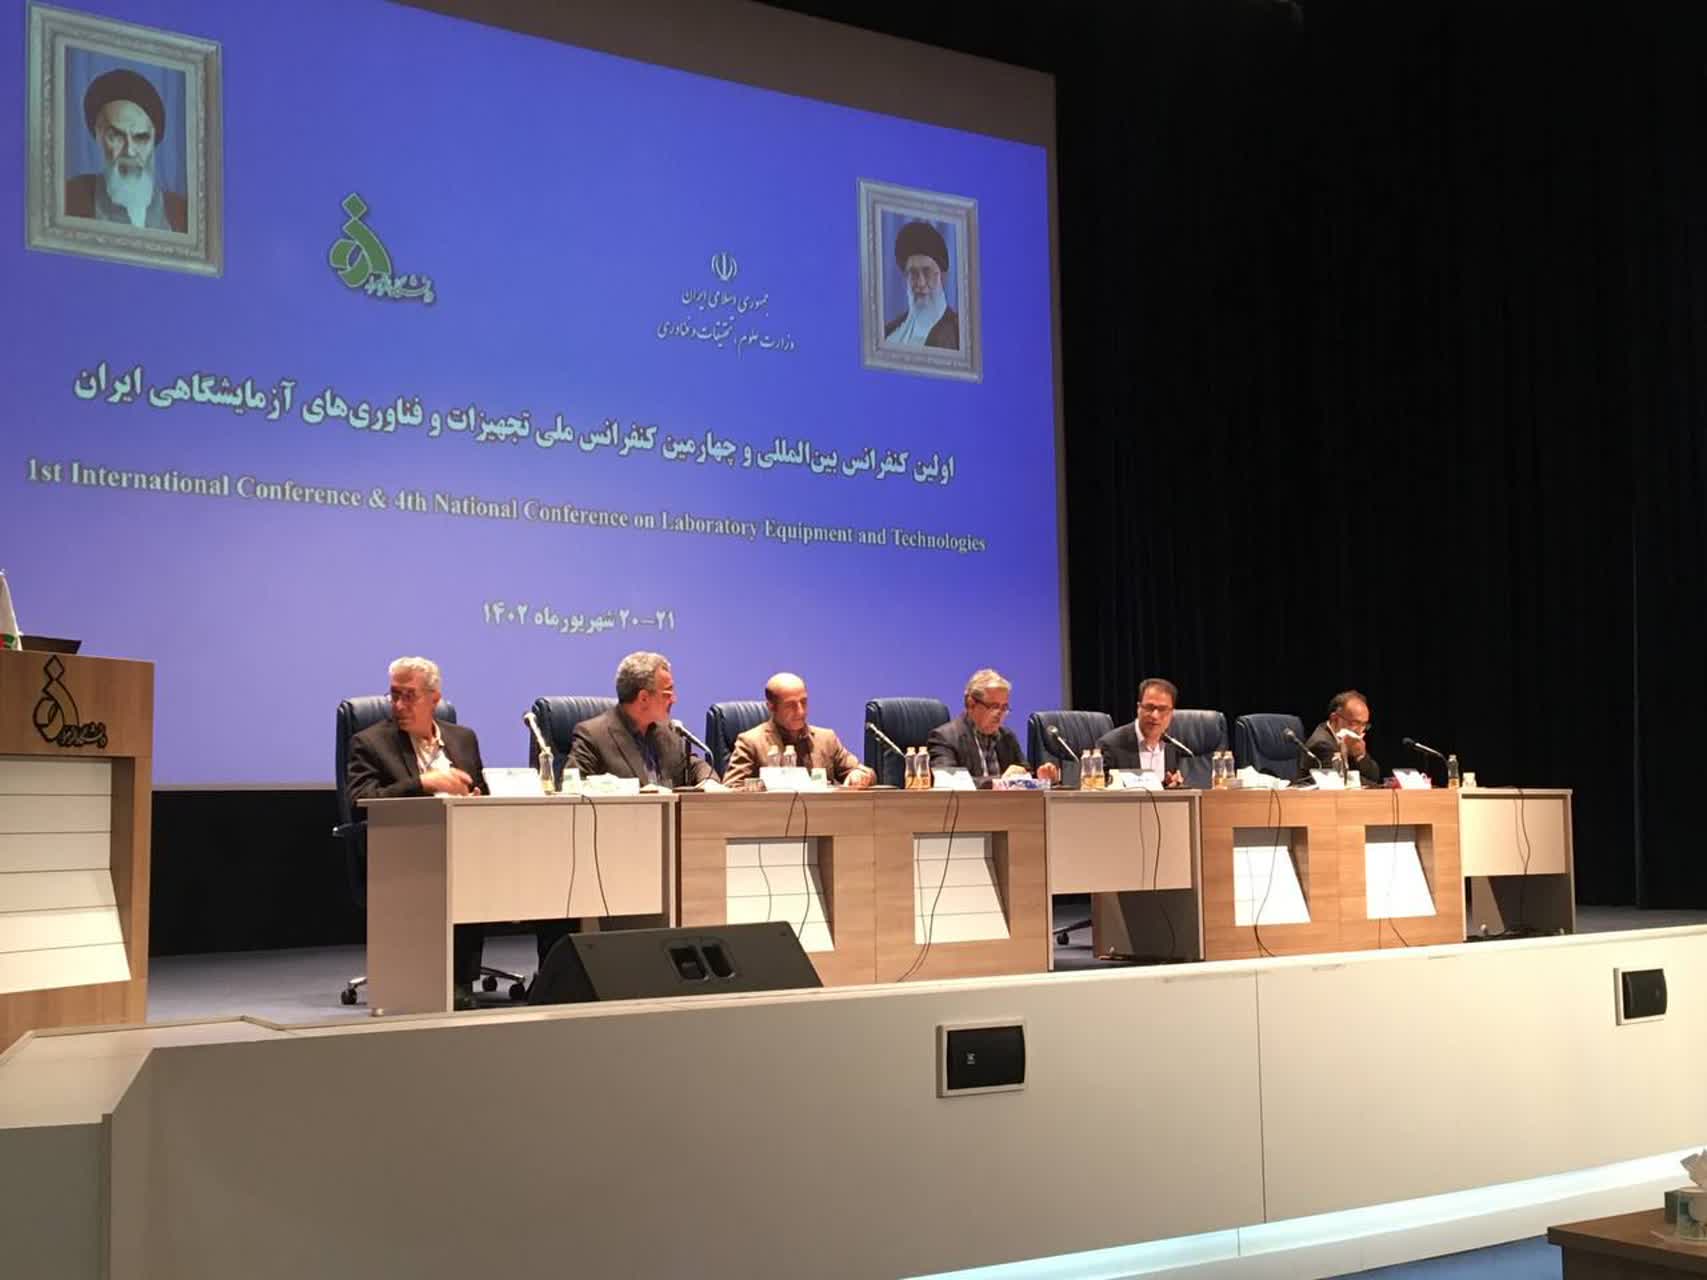 حضور رییس آزمایشگاه مرکزی در اولین کنفرانس بین المللی و چهارمین کنفرانس ملی تجهیزات و فناوری های آزمایشگاهی ایران